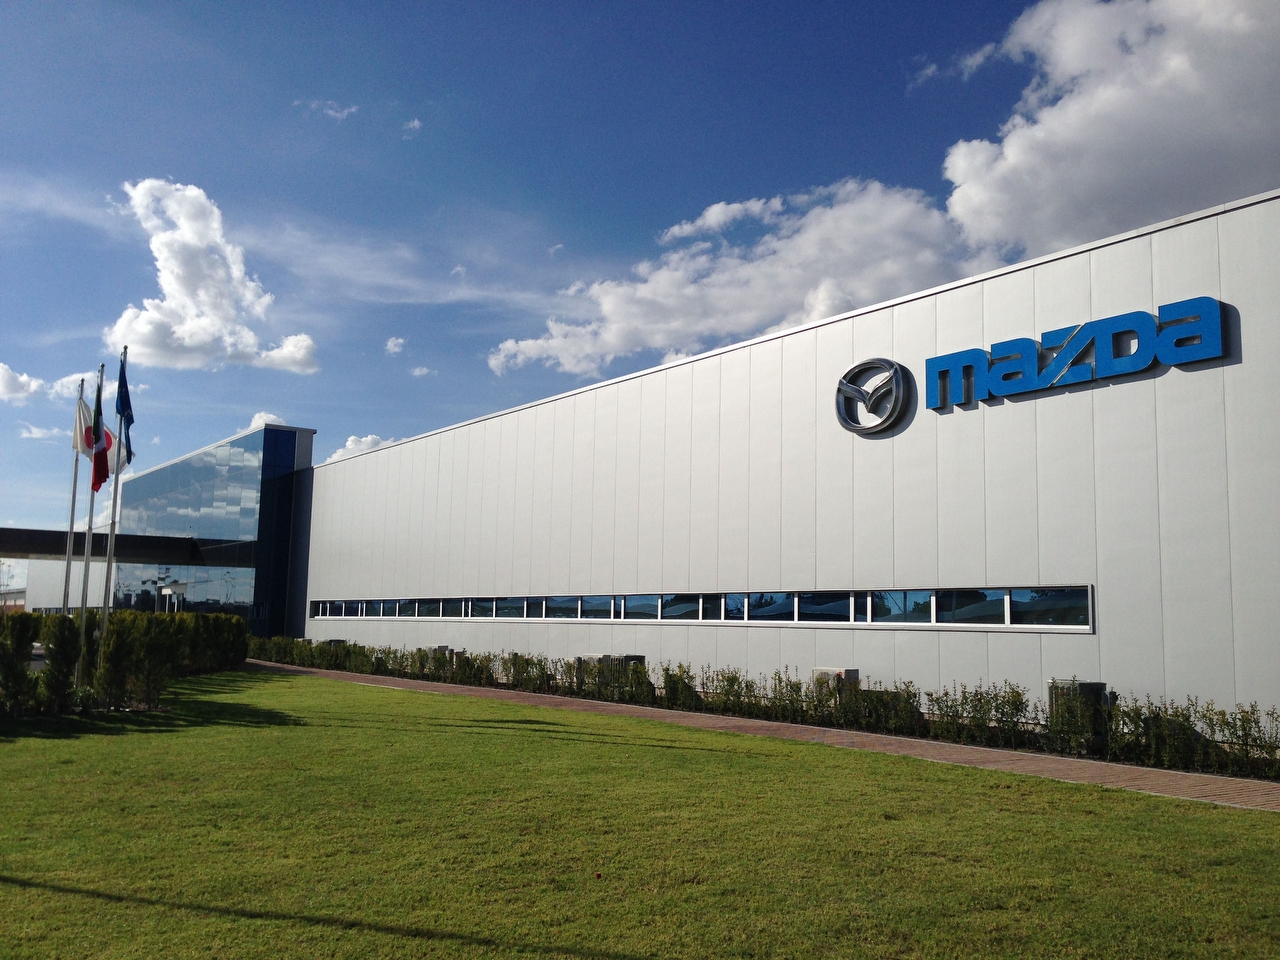 Trabajadores de Mazda rechazaron los términos de la revisión que hizo su sindicato. ¡Bienvenida la democracia sindical!